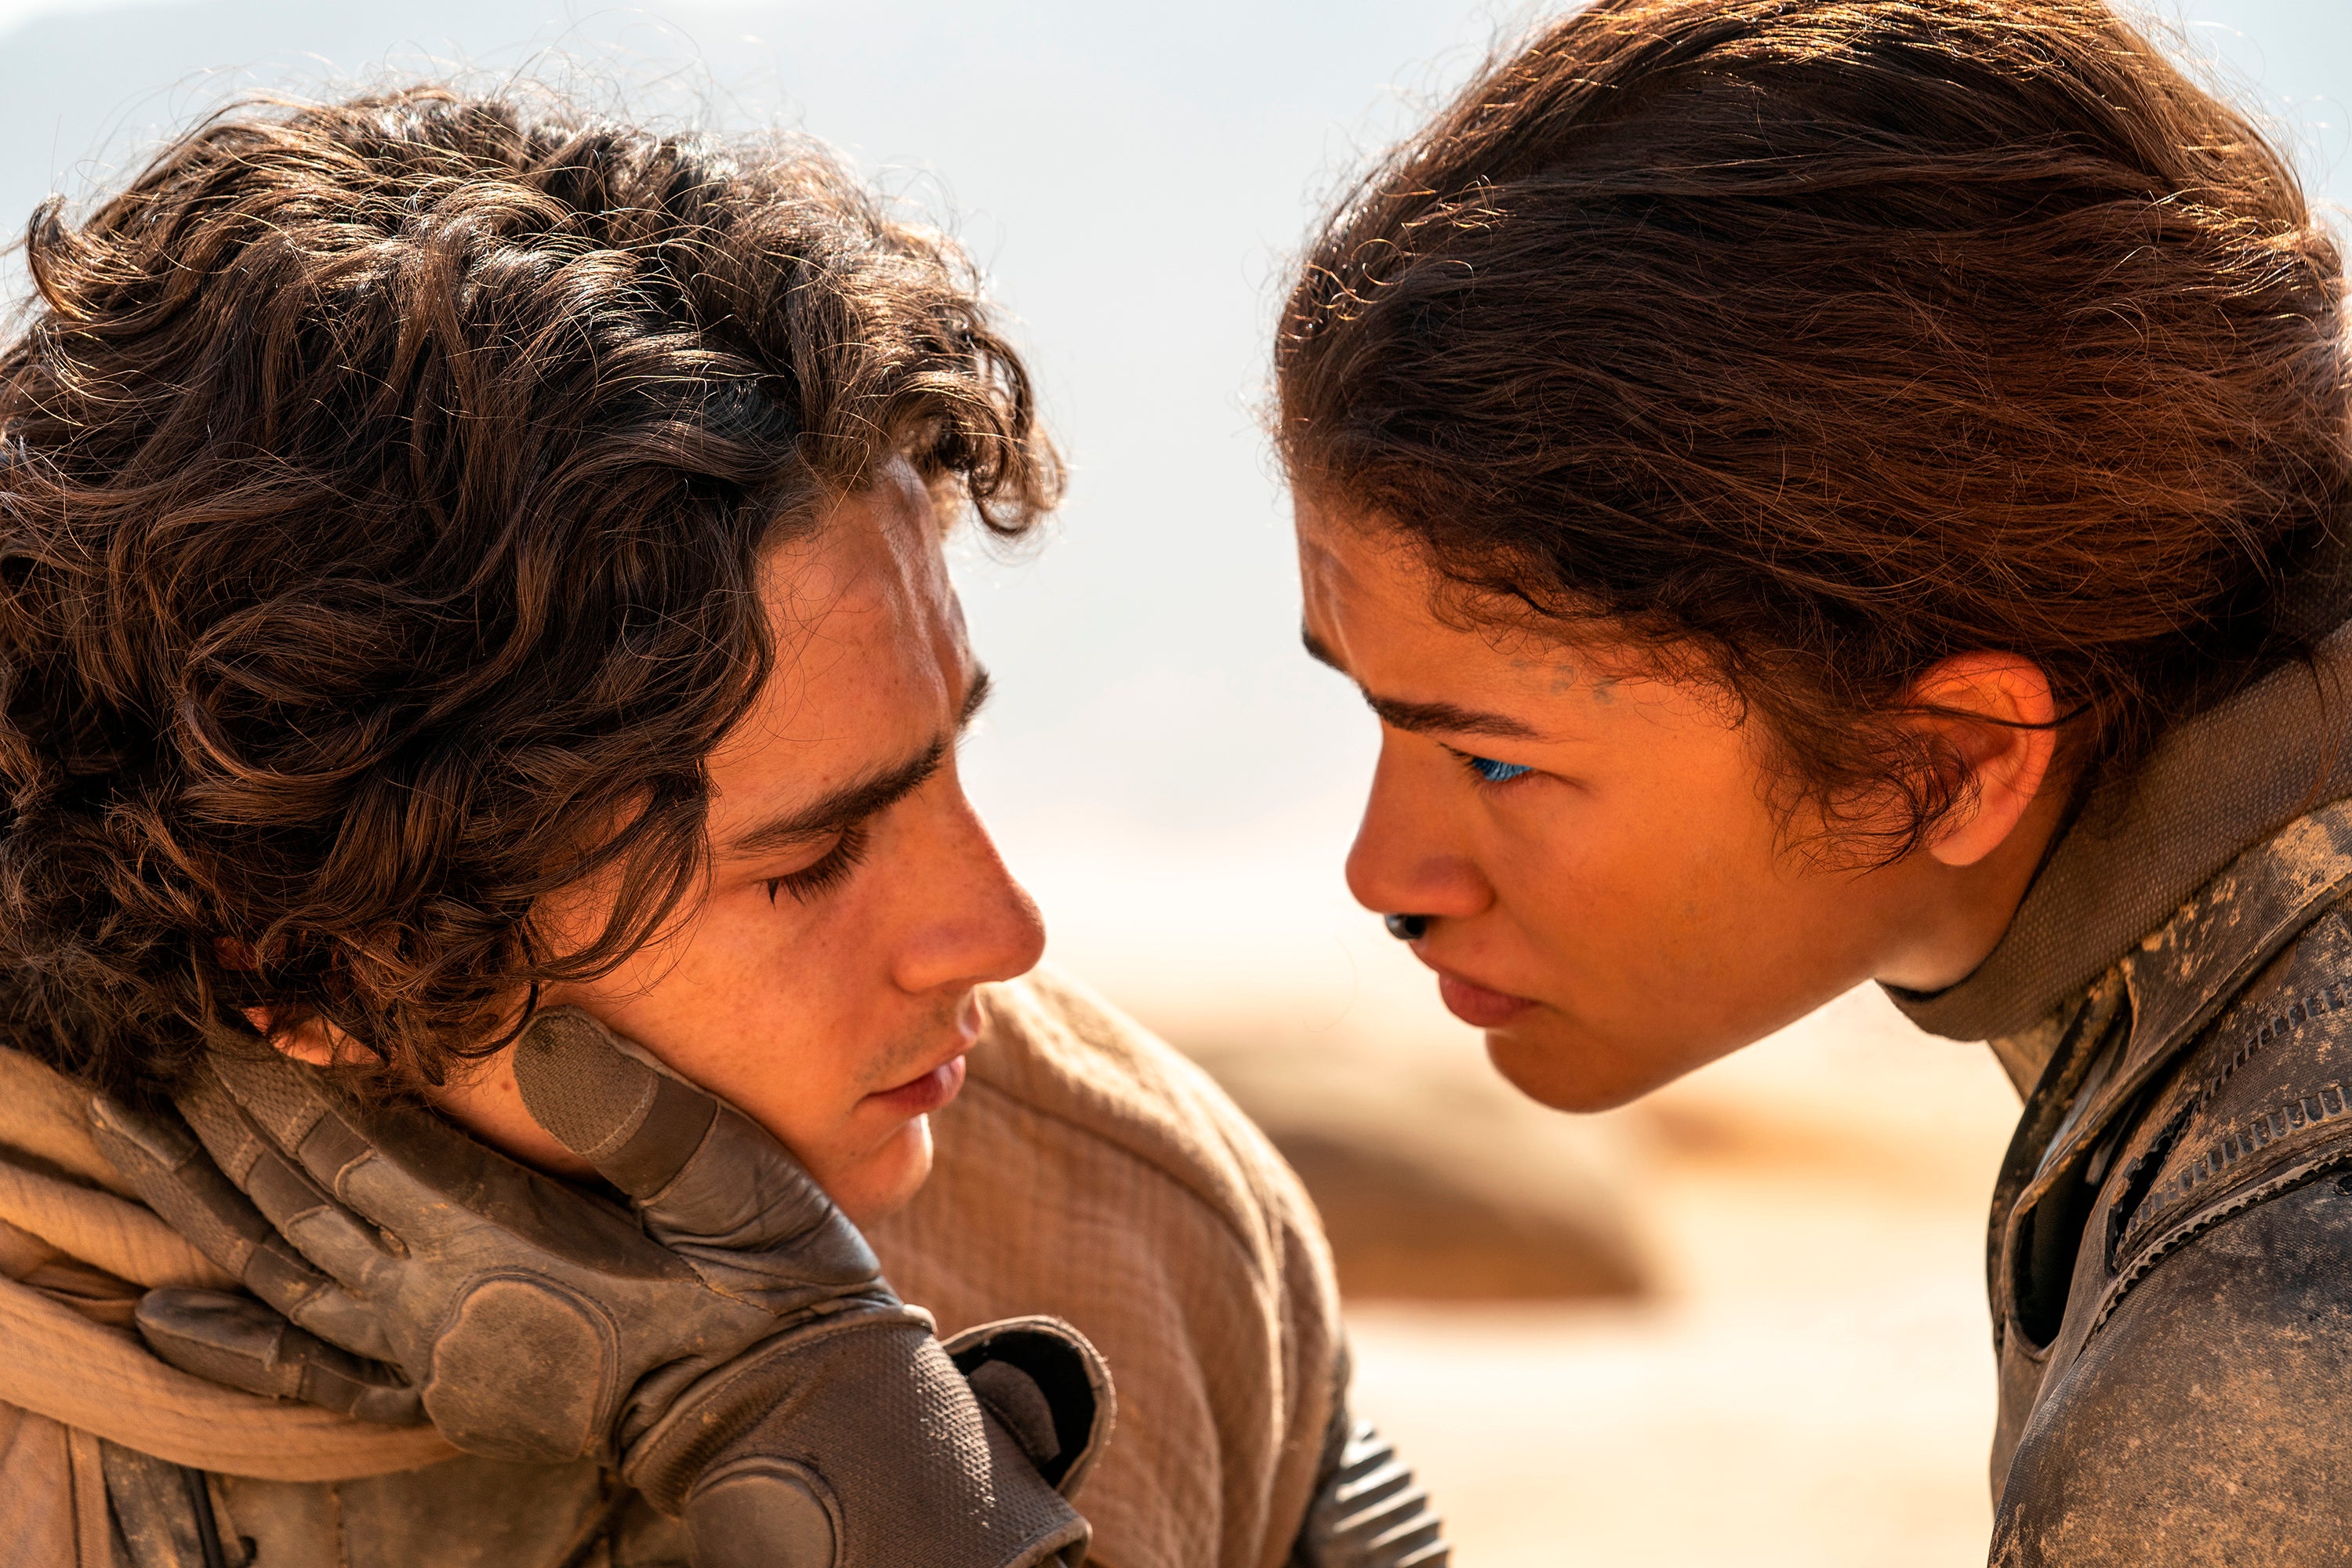 Timothee Chalamet and Zendaya in Dune: Part Two